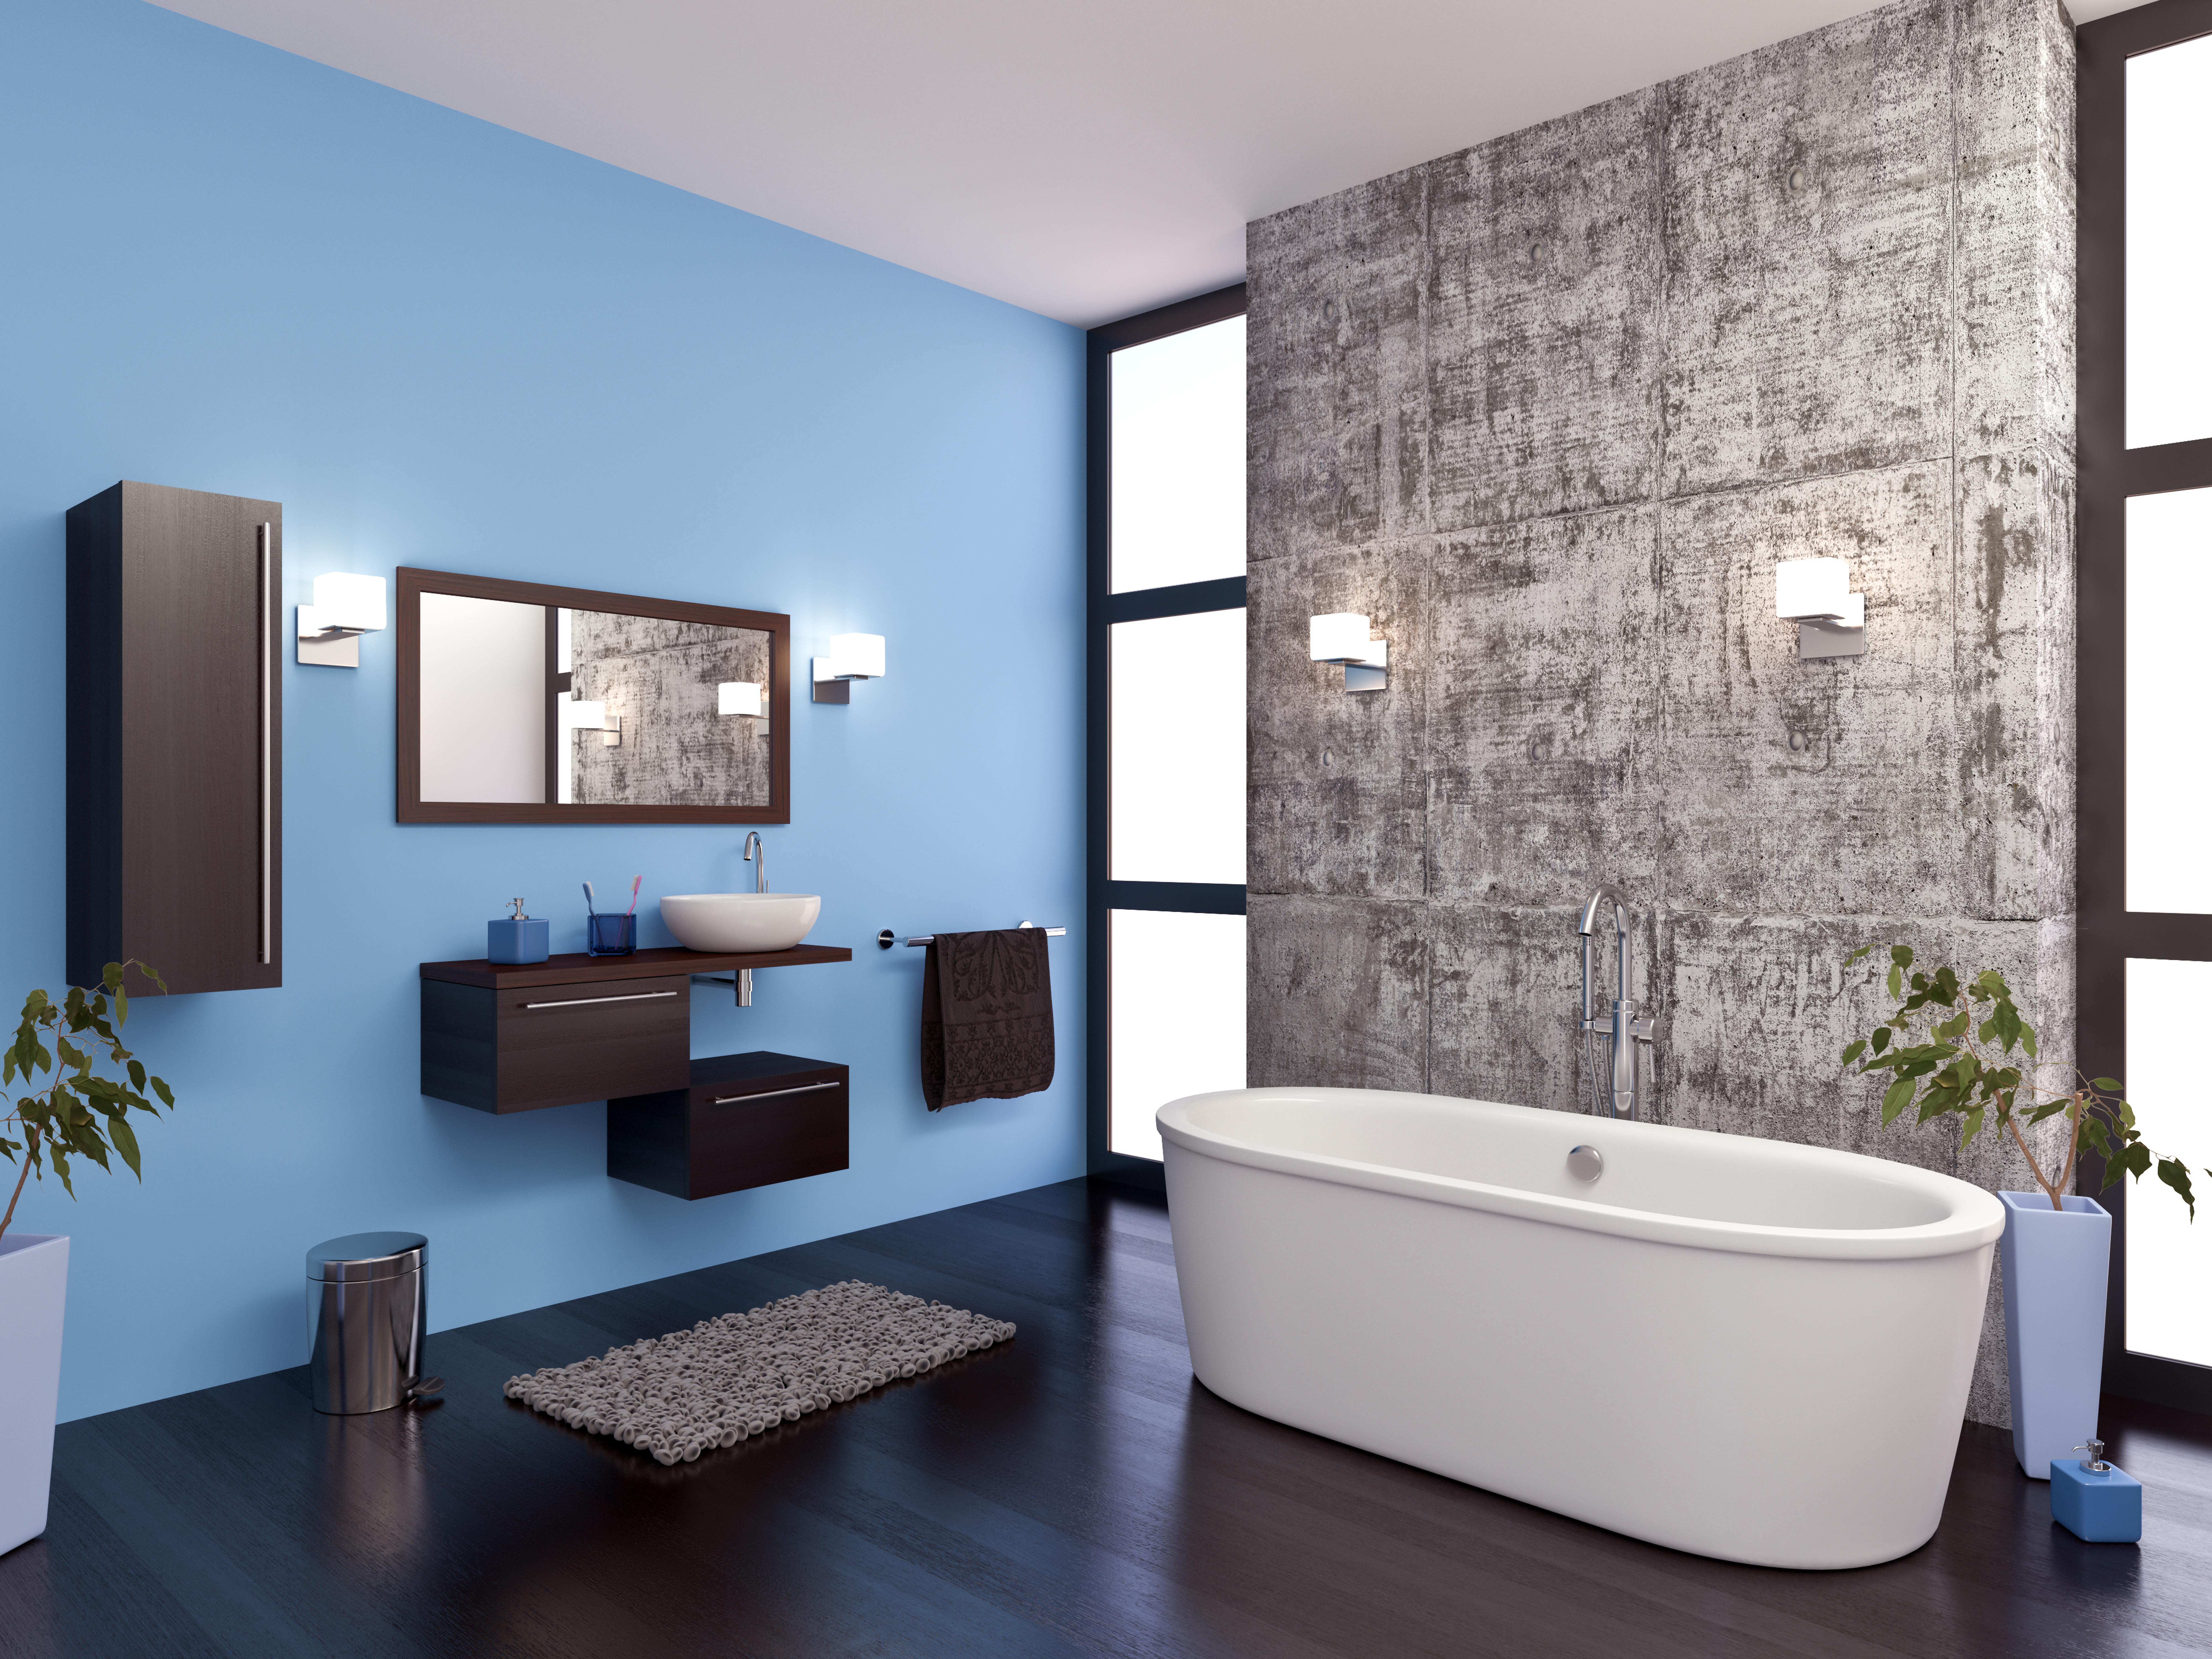 Bathroom Interior - shutterstock_153610025.jpg